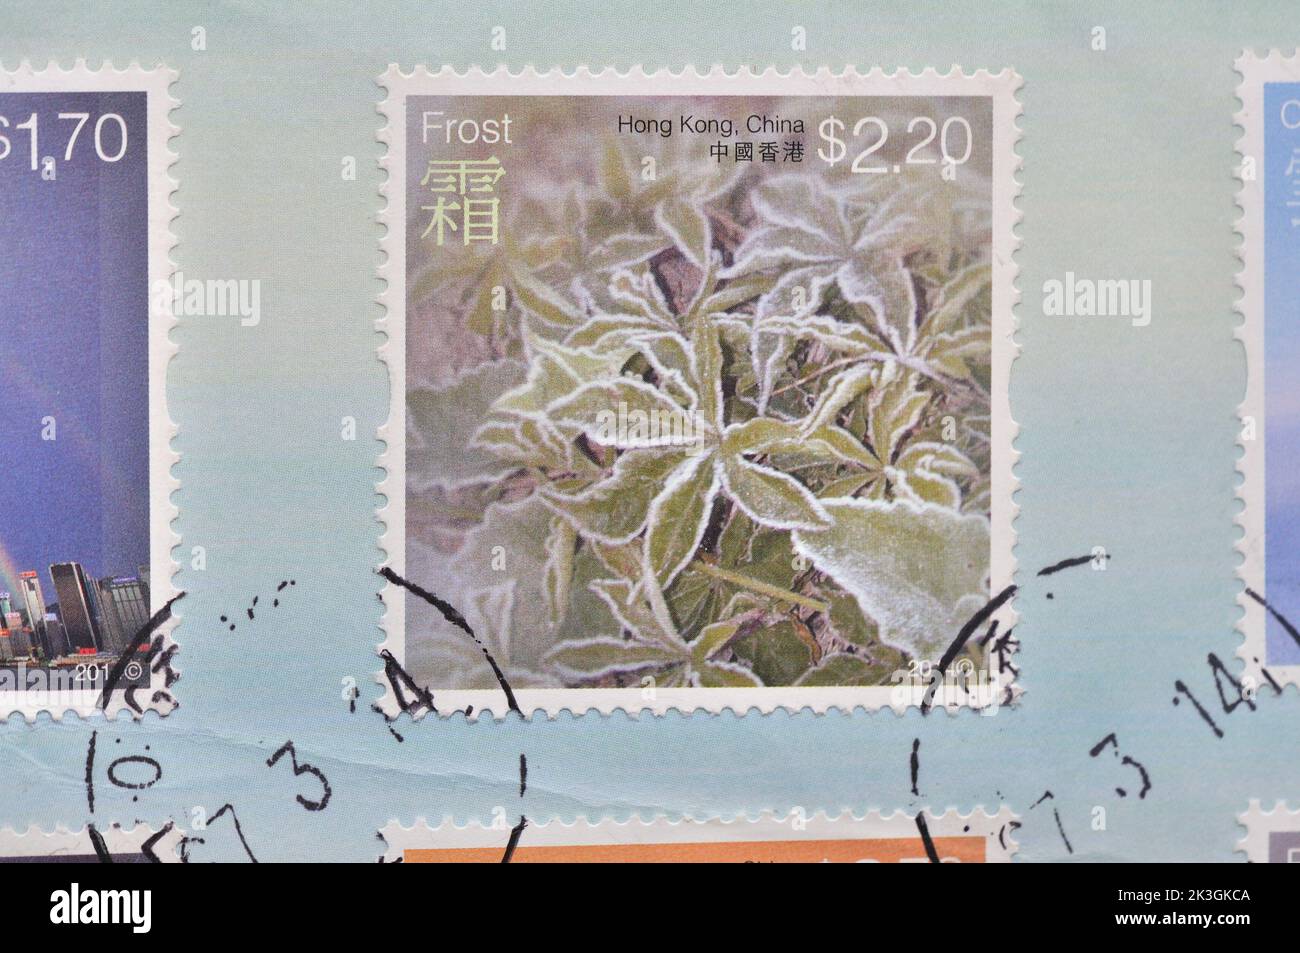 Hong Kong - CIRCA 2014:Un francobollo stampato in Hongkong mostra fenomeni  del tempo francobolli speciali - $2,20 Frost, circa 2014 Foto stock - Alamy